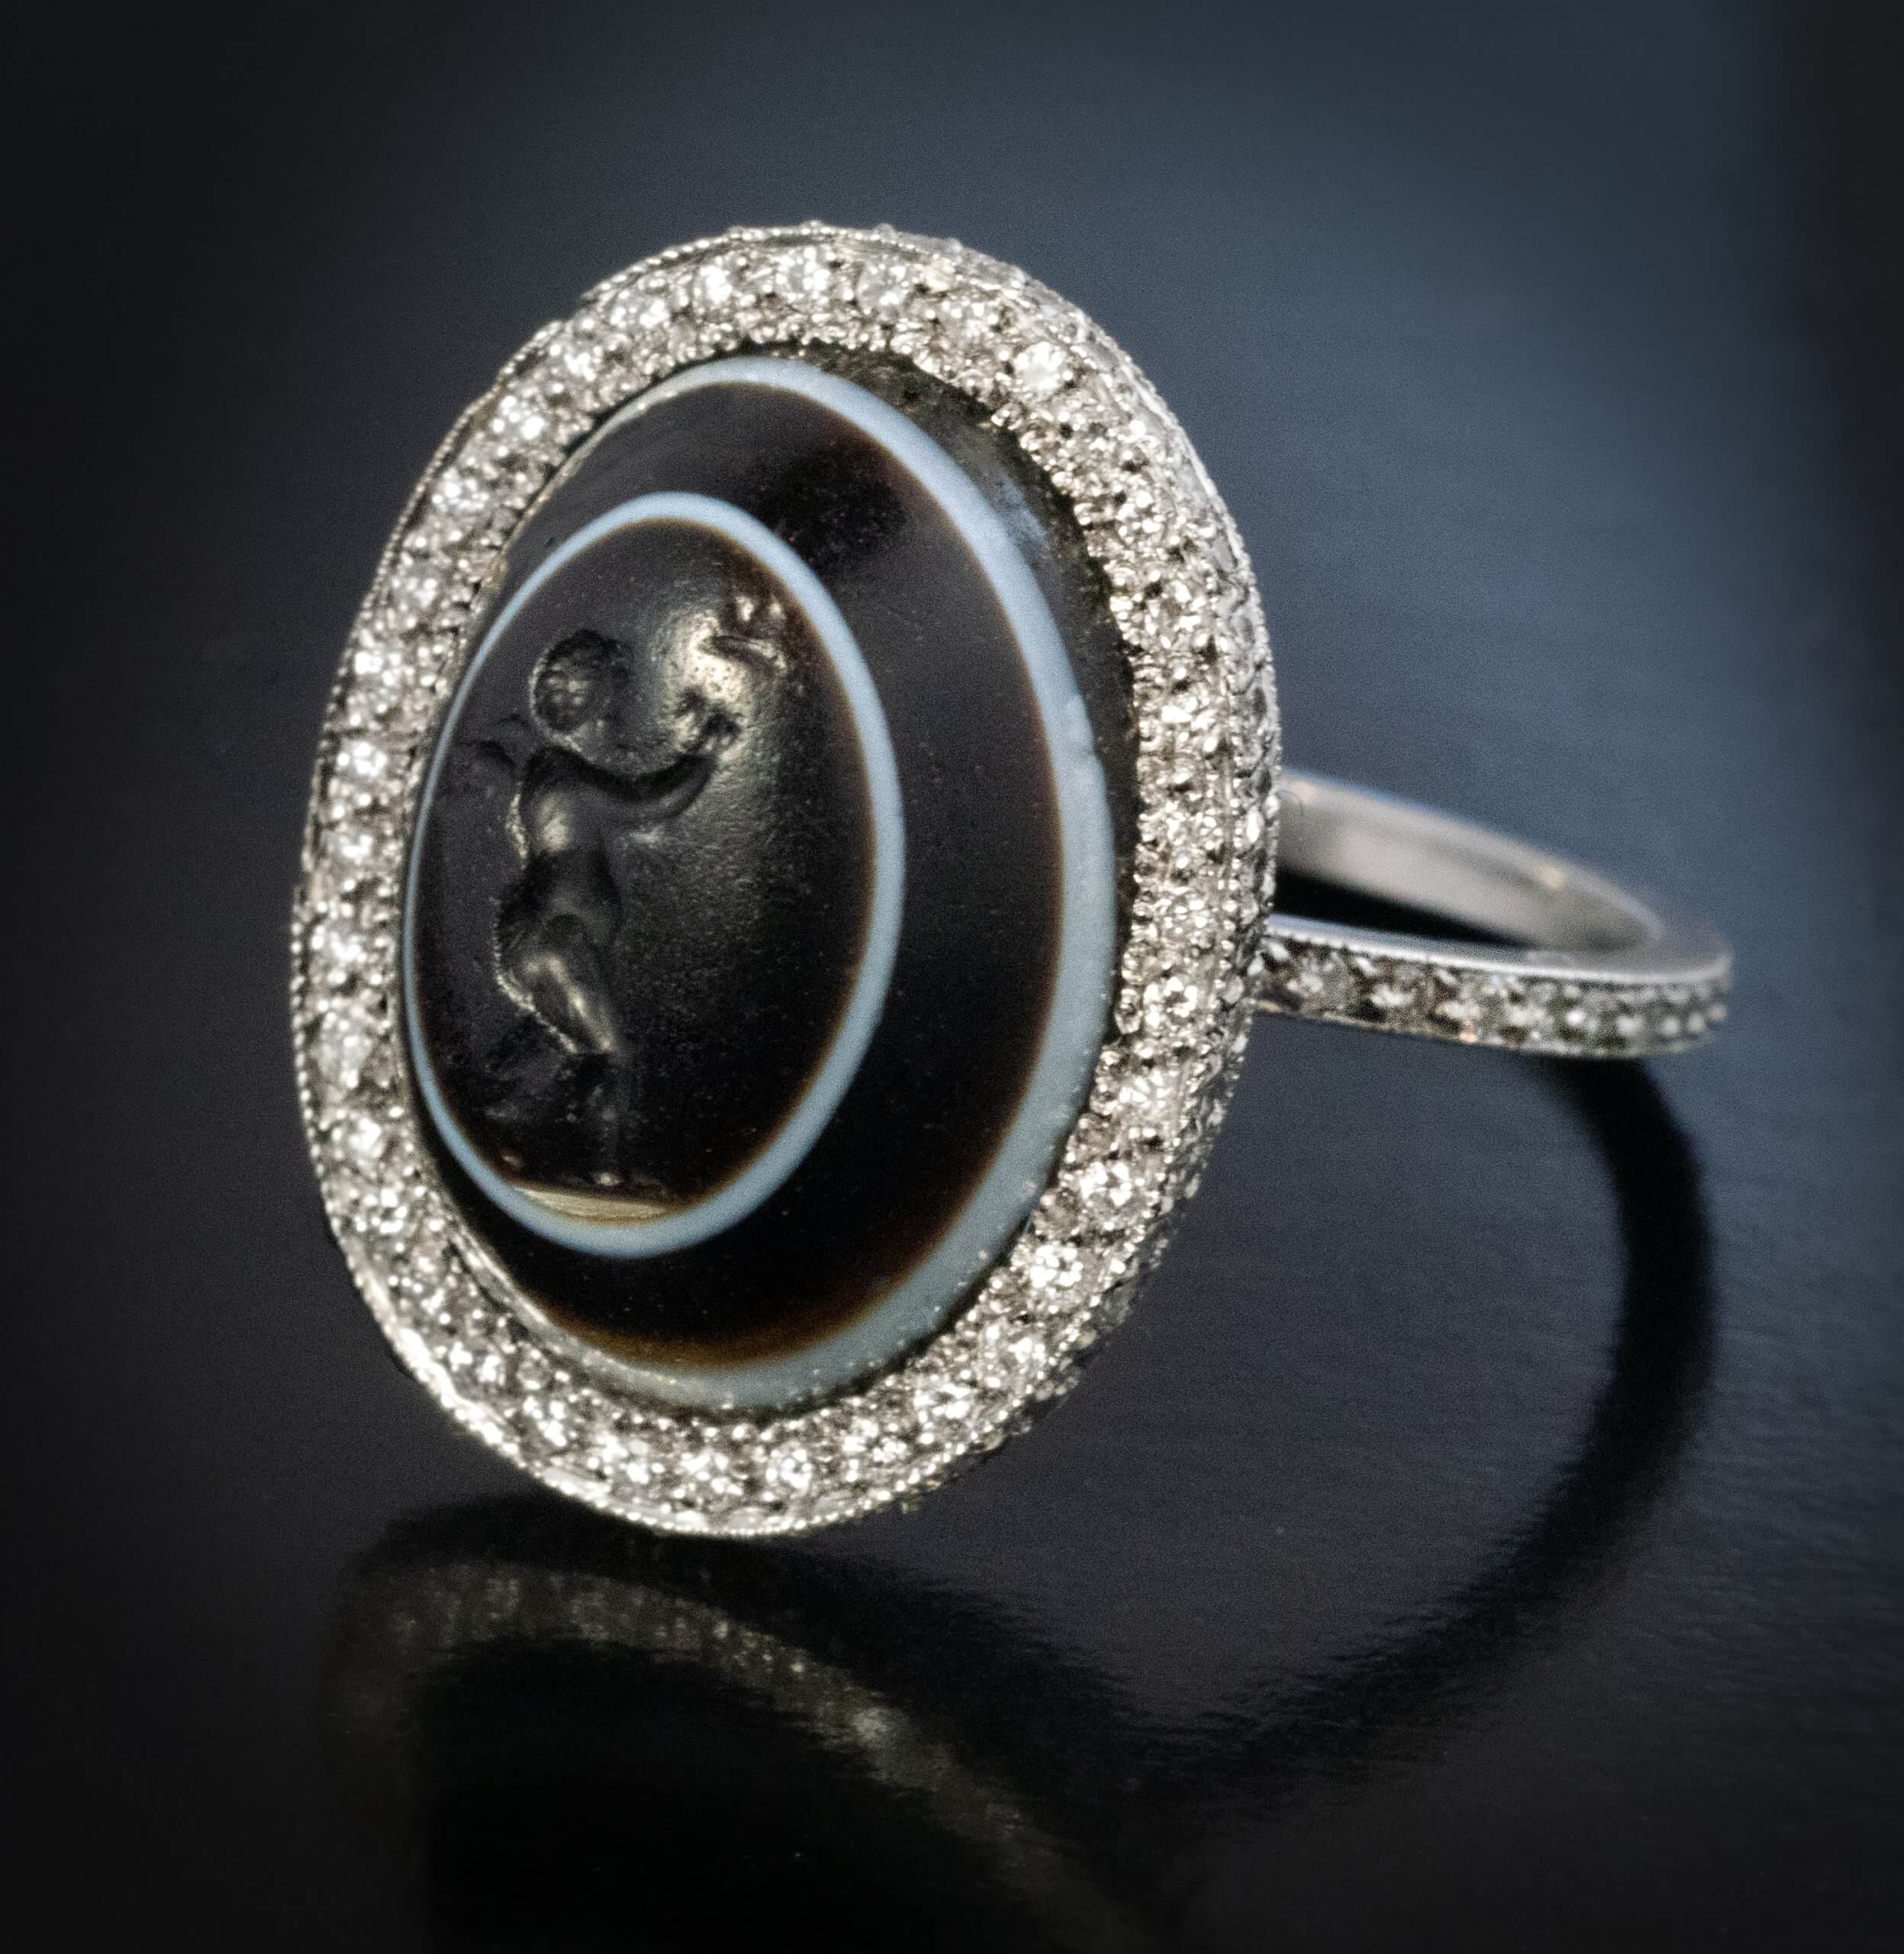 Unique Ancient Roman Intaglio Engagement Ring Ref: 981456 - Antique ...